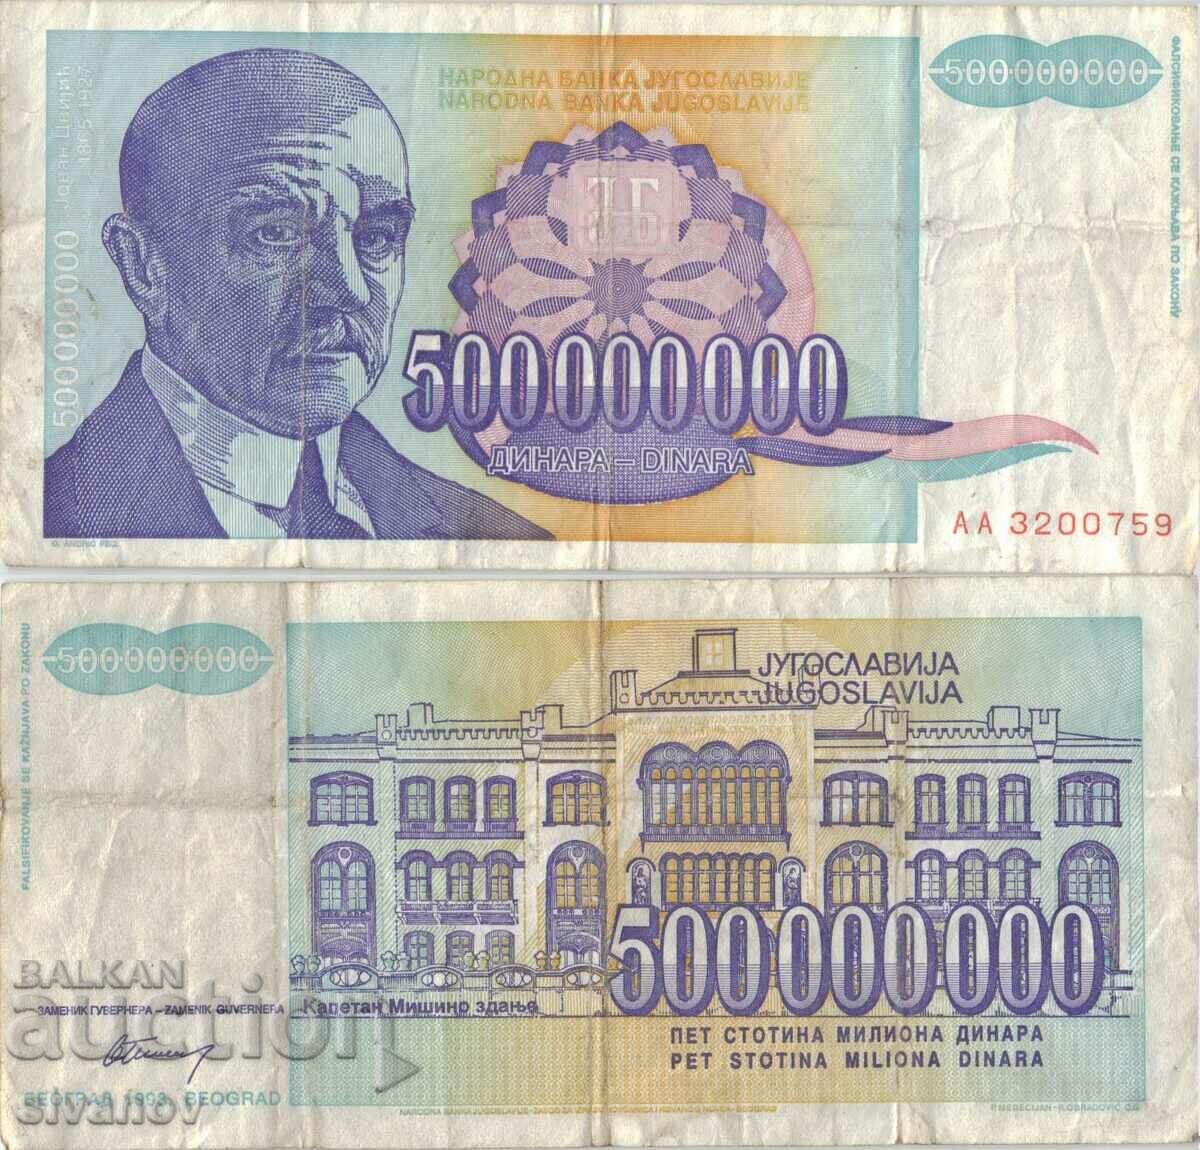 Yugoslavia 500,000,000 dinars 1993 #5072